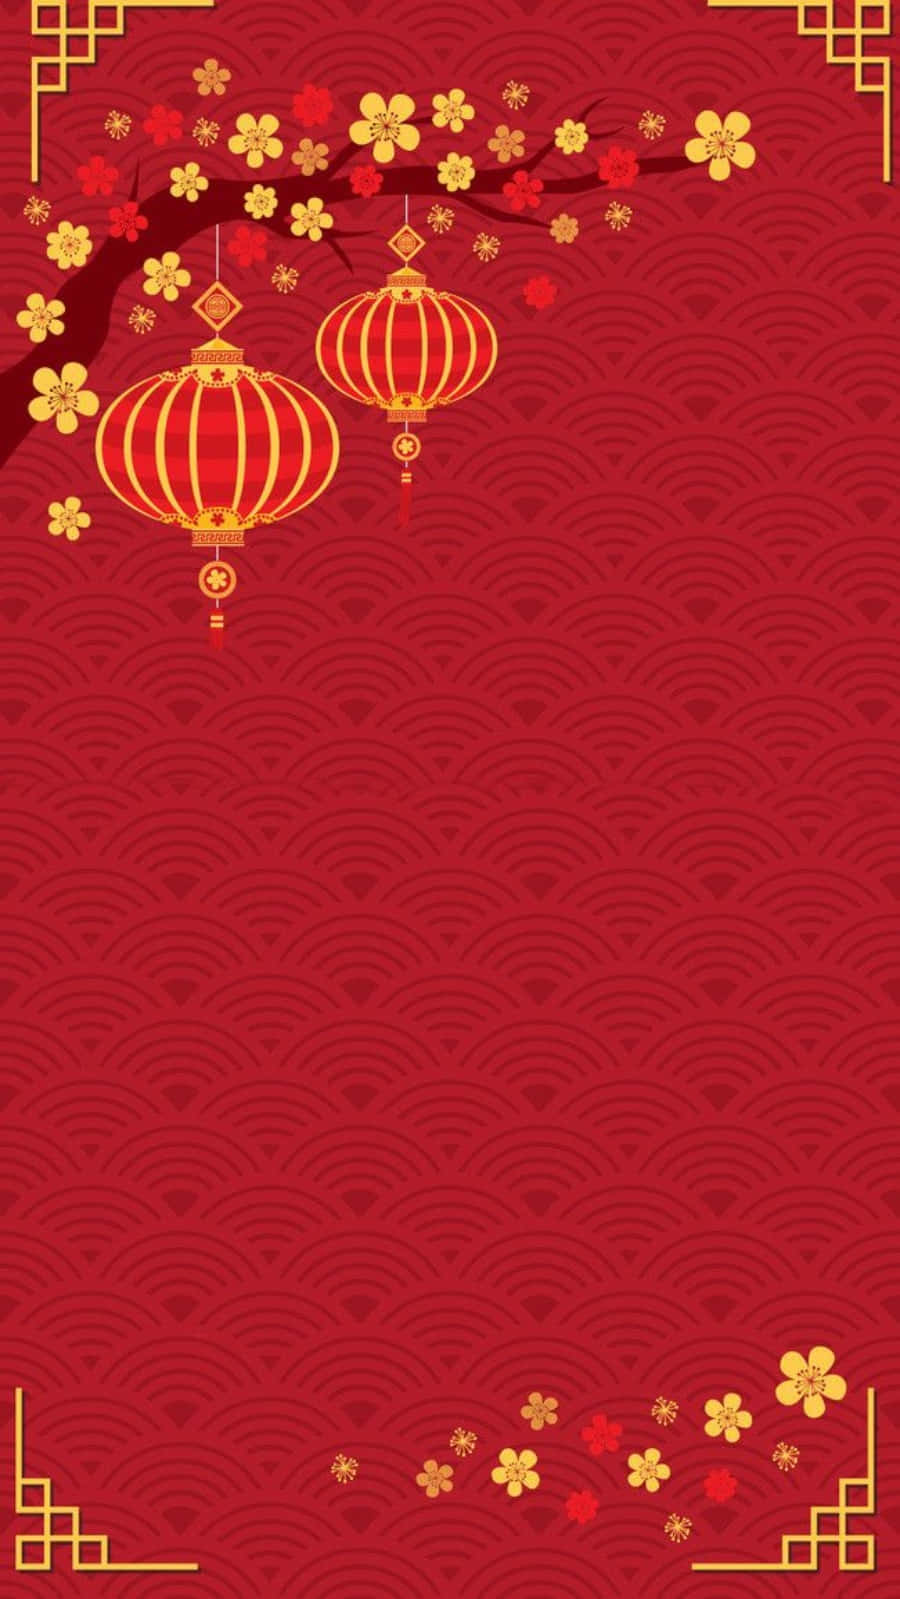 Celebrael Año Nuevo Chino Con El Último Iphone. Fondo de pantalla